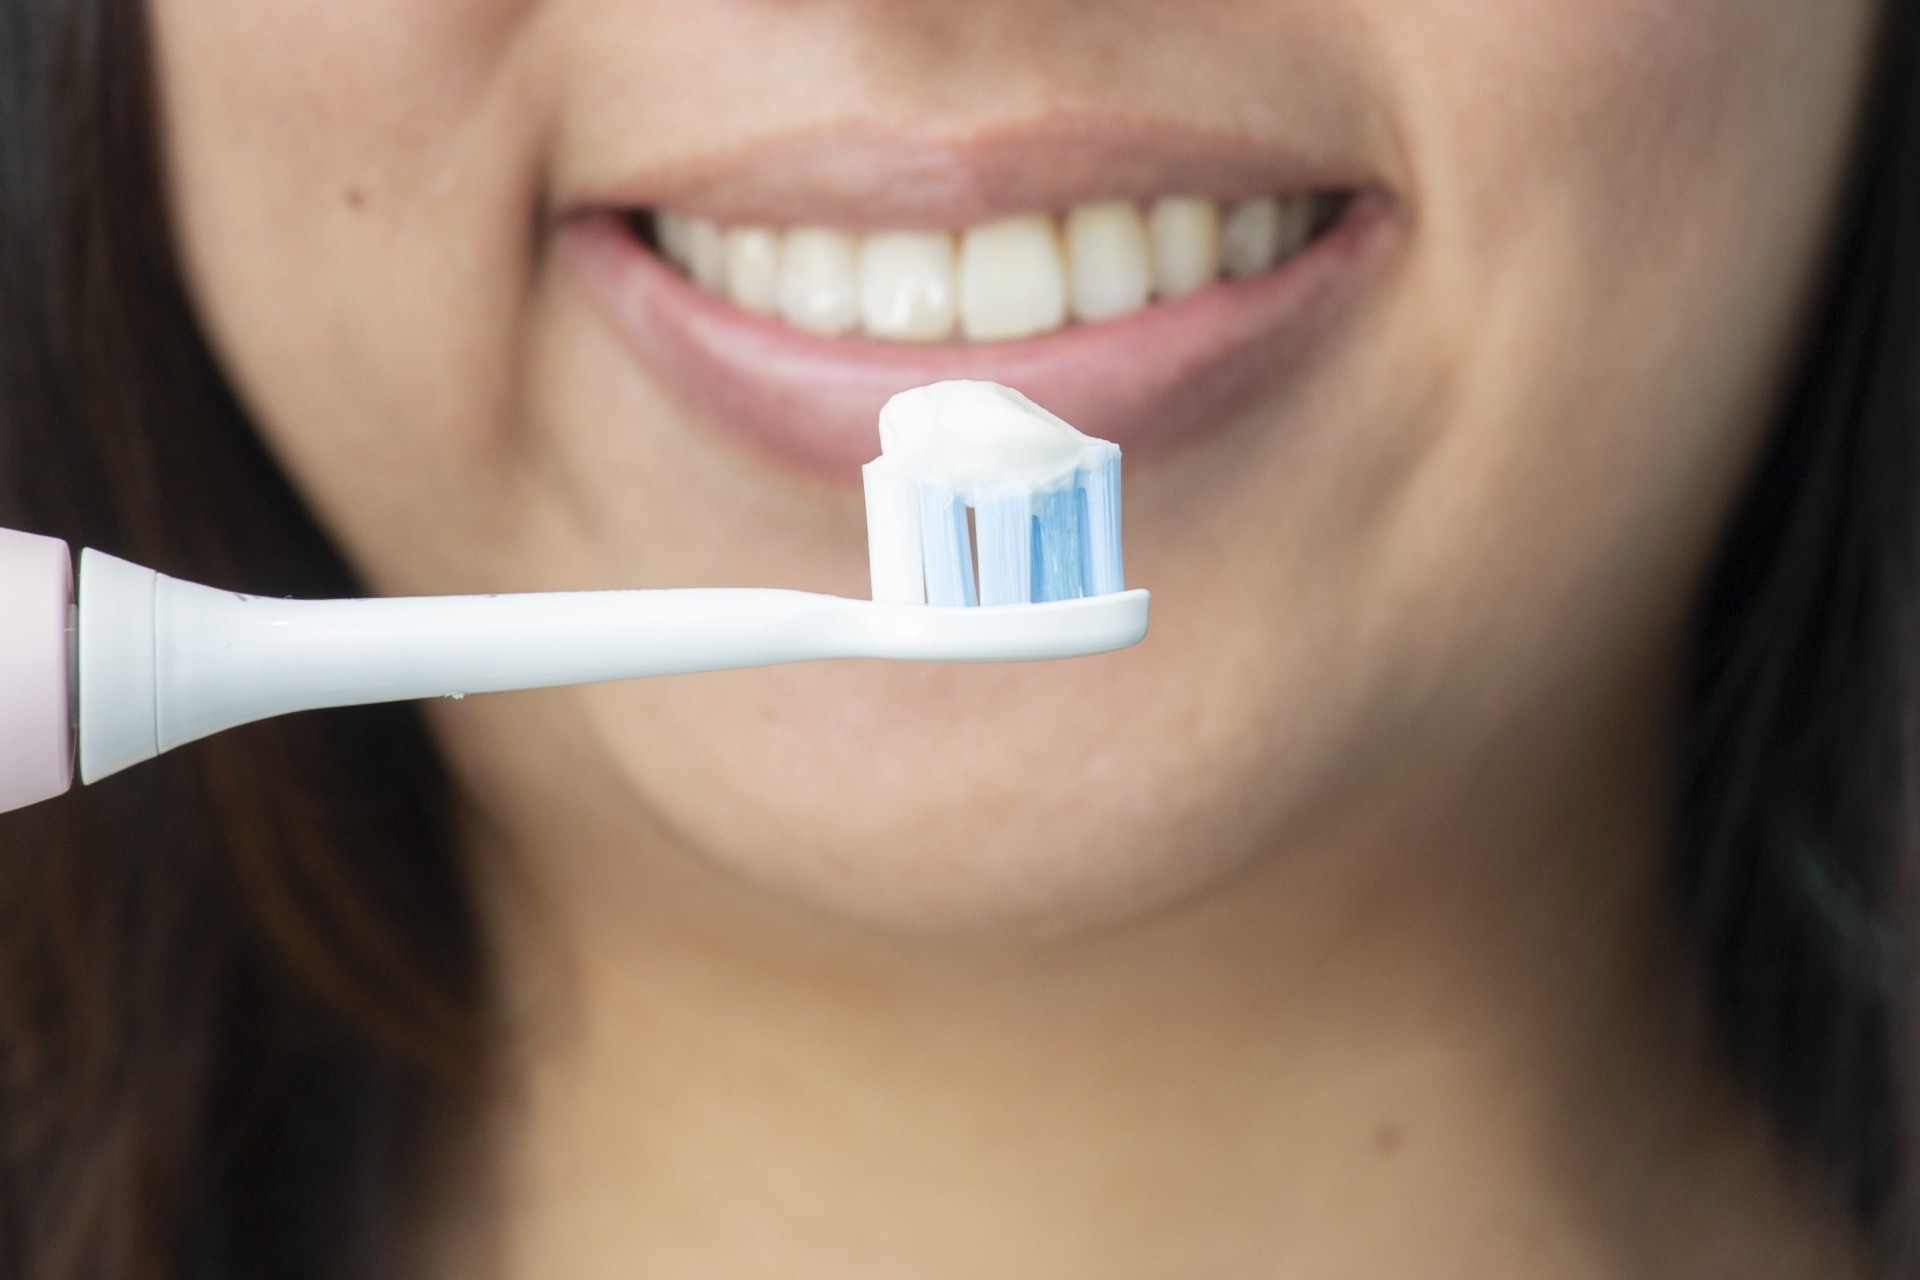 電動牙刷可以將口腔深處的死角位置髒污垢震出。